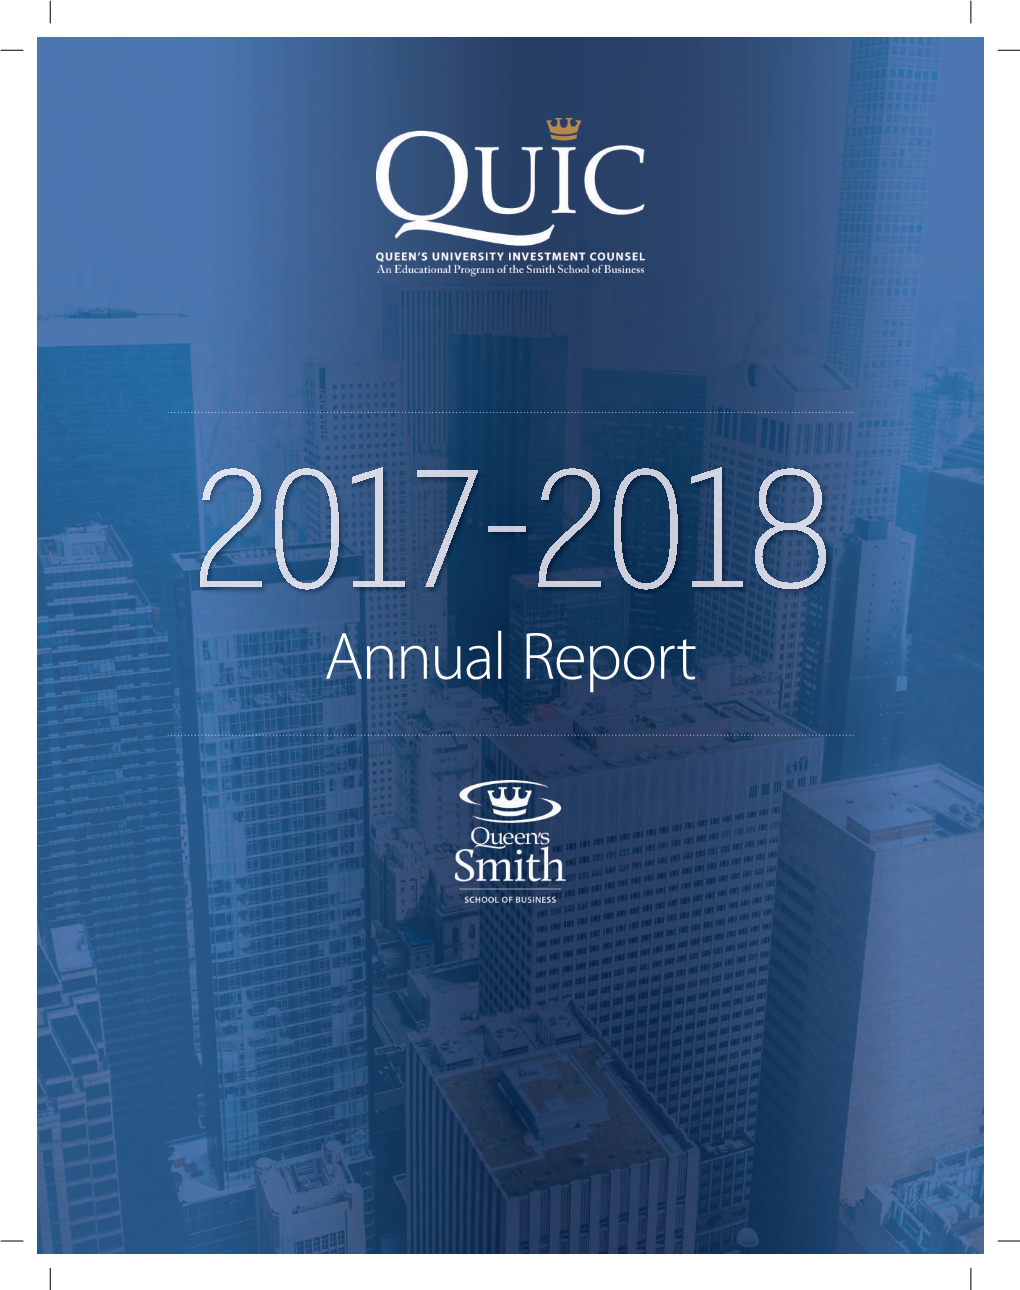 Annual Report Executive@Quiconline.Com